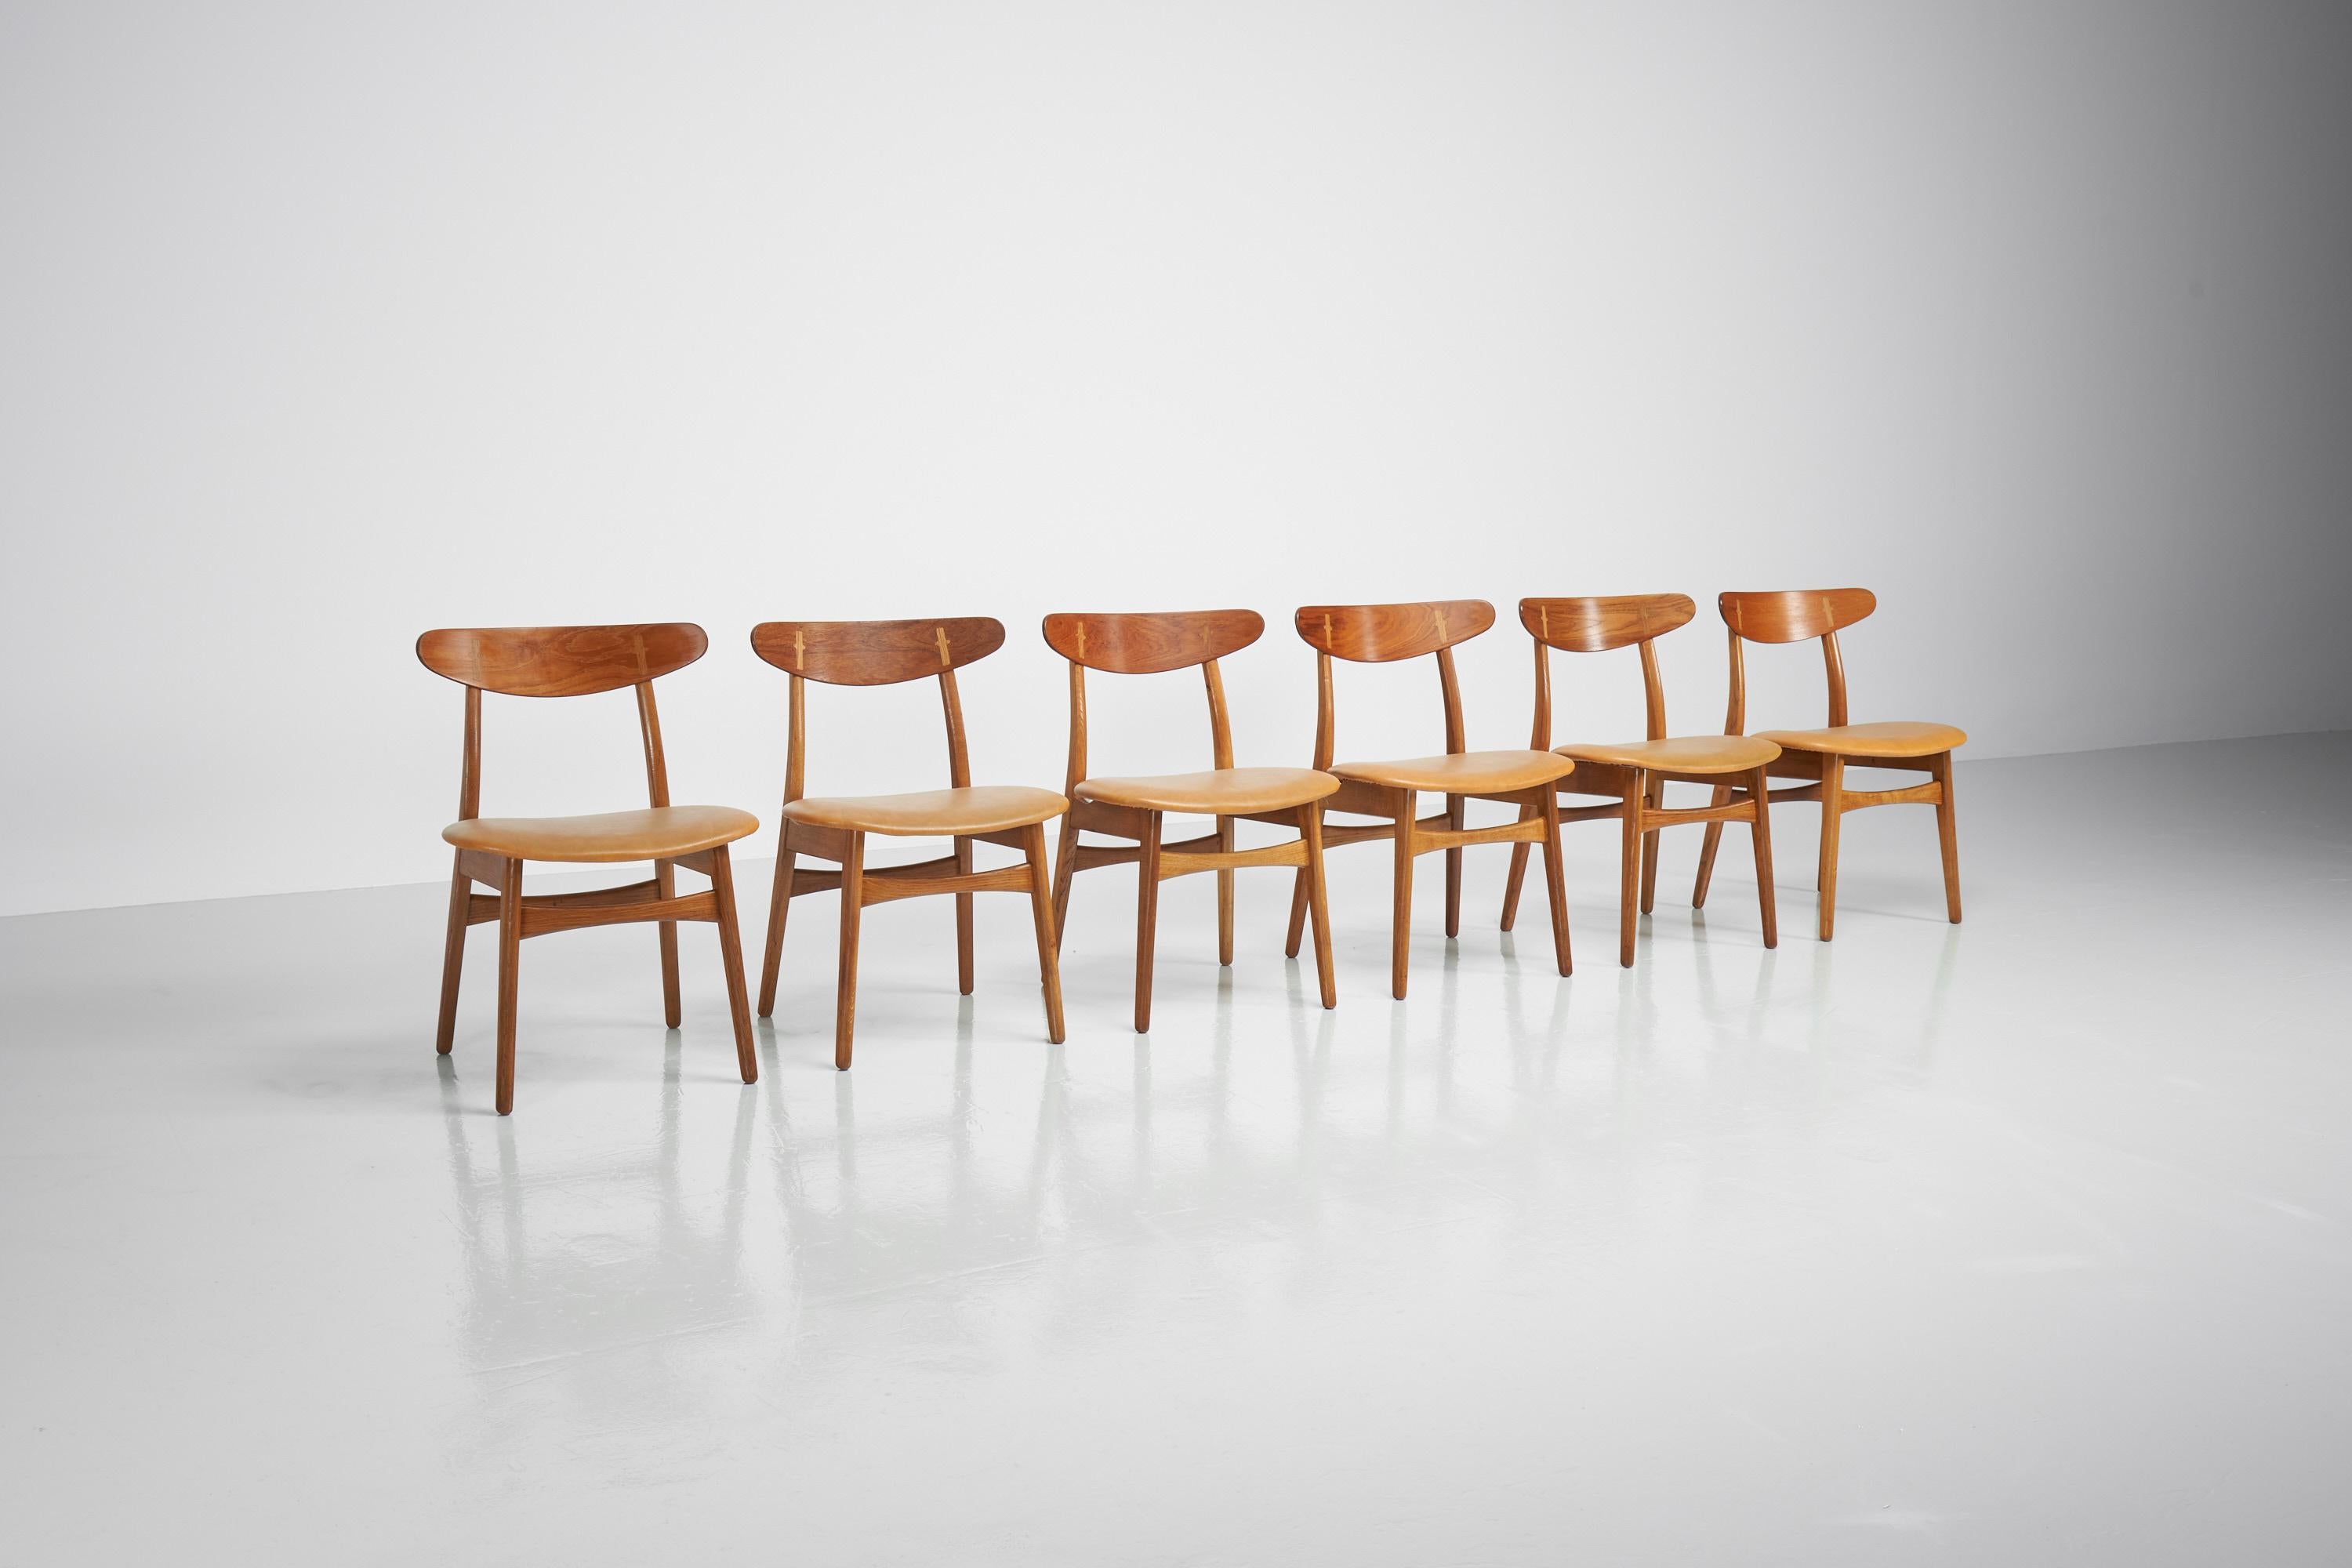 Superbe ensemble de 6 chaises de salle à manger modèle CH30 conçu par Hans J. Wegner et fabriqué par Carl Hansen & Son, Odense Danemark 1950. Ces chaises sont un des premiers modèles de Wegner, car elles ont été présentées pour la première fois en